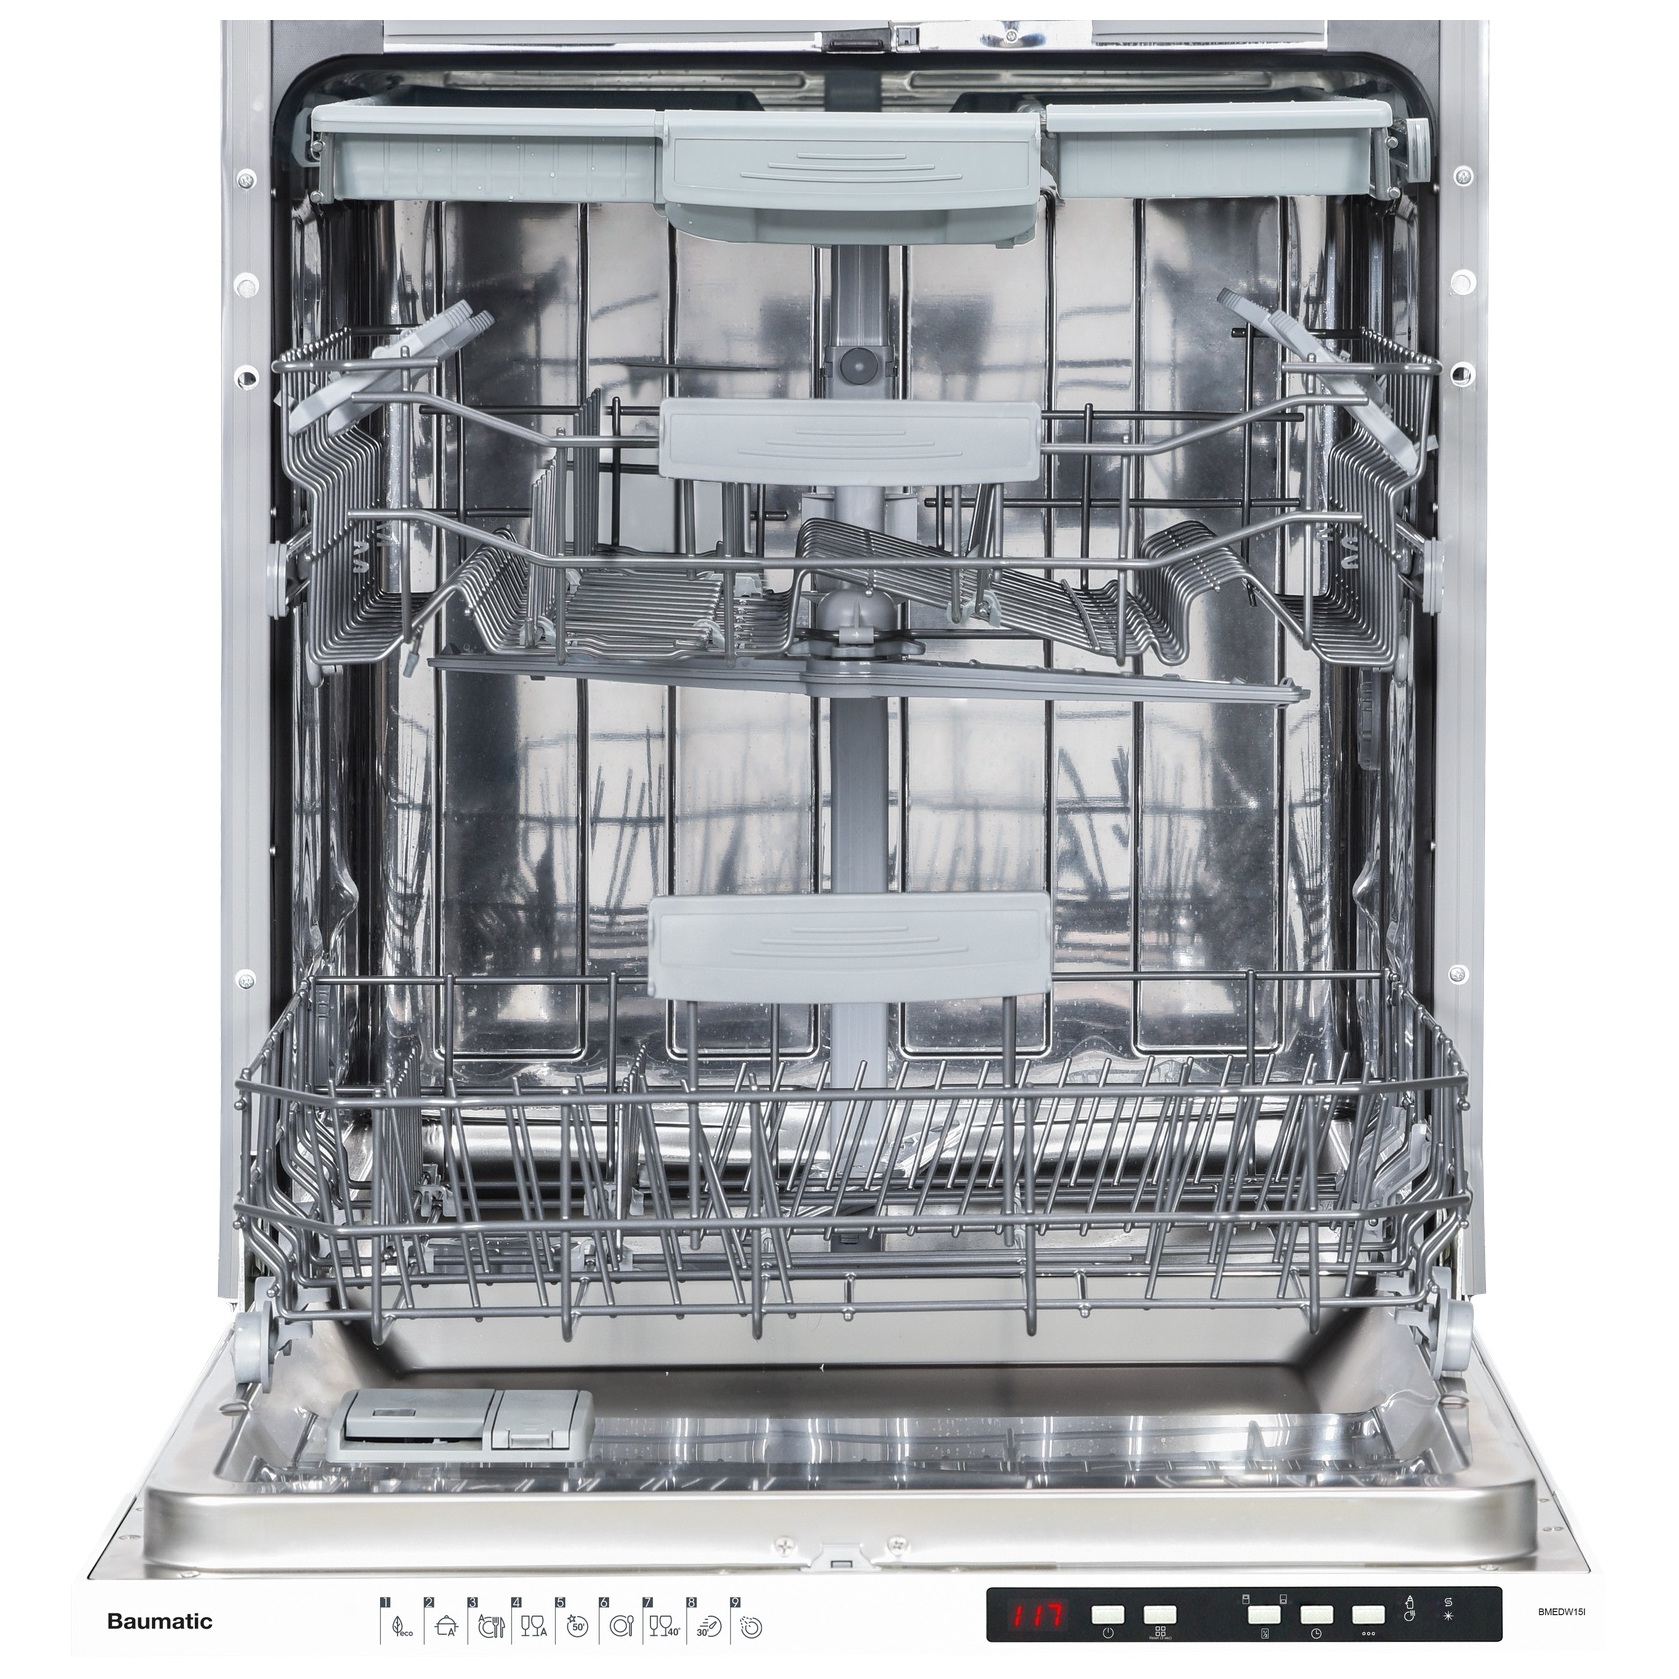 Buy Baumatic Built In Dishwasher BMEDW15I-2 Online in UAE | Sharaf DG